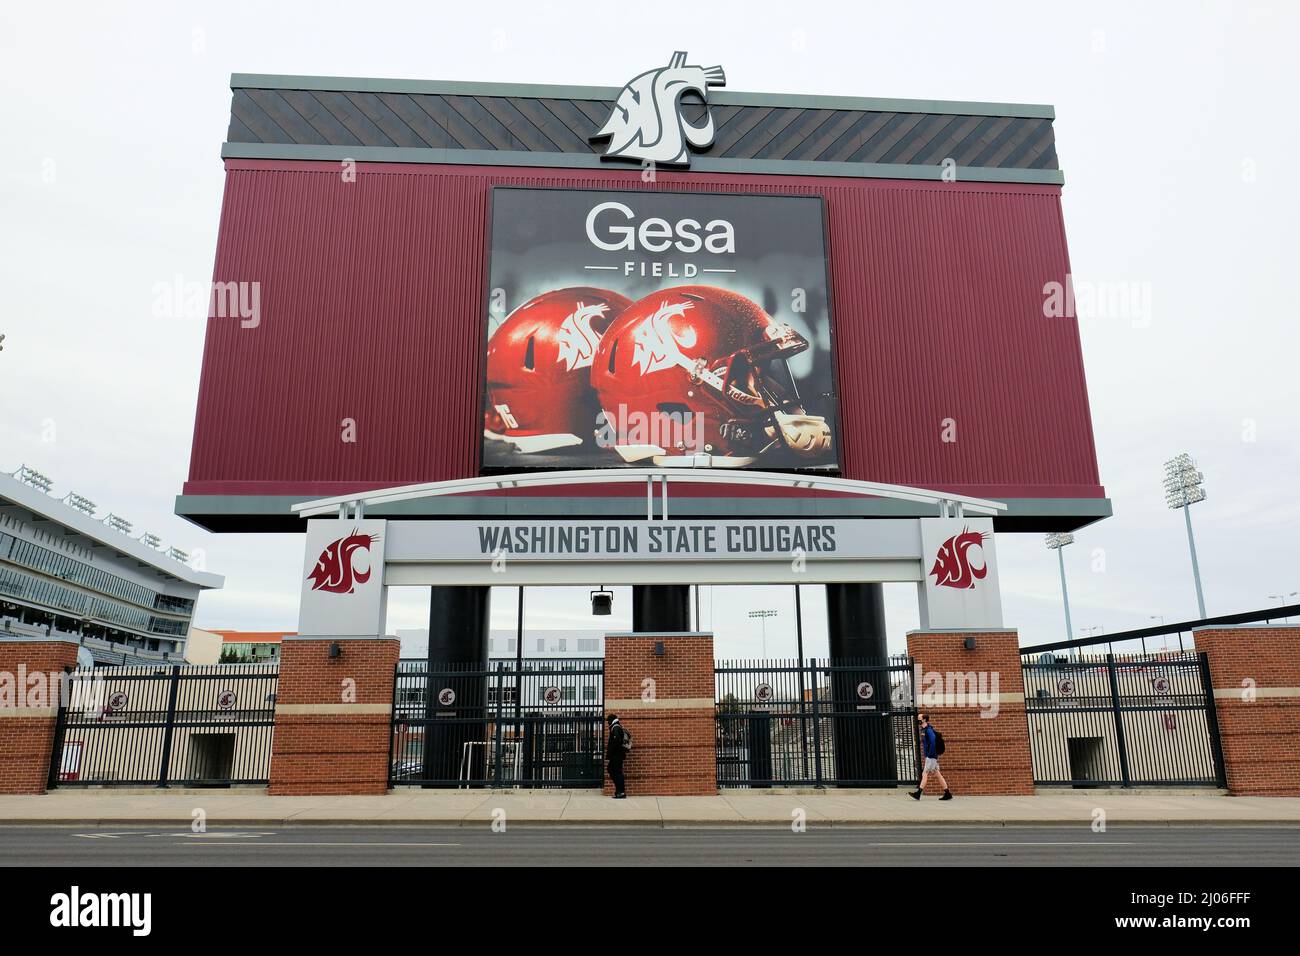 Panneau GESA Field au stade Martin, sur le campus de l'université d'État de Washington à Pullman, Washington, Etats-Unis ; WSU Cougars ; stade de football. Banque D'Images